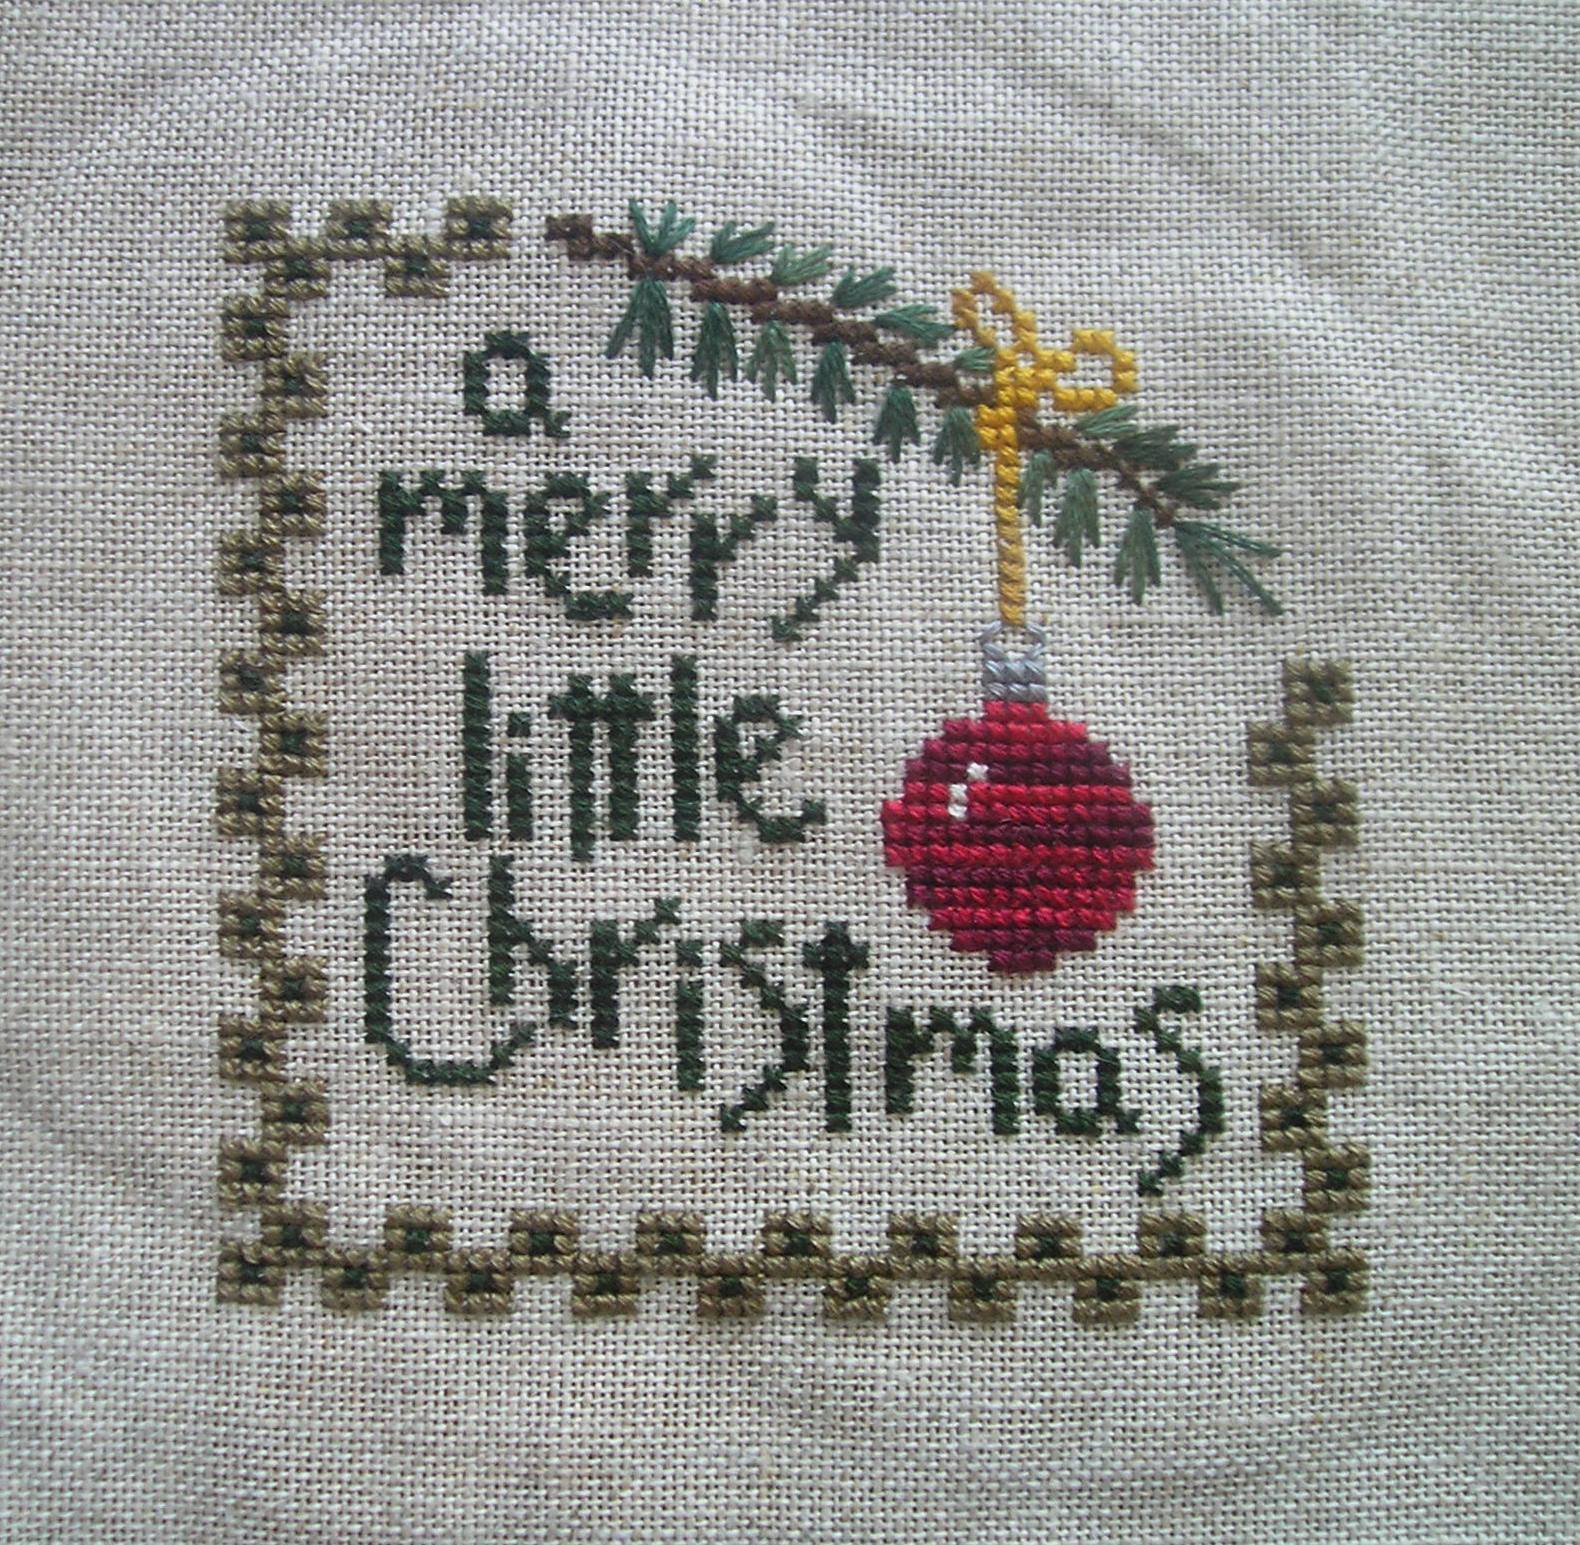 merry-little-christmas-final-version1.jpg